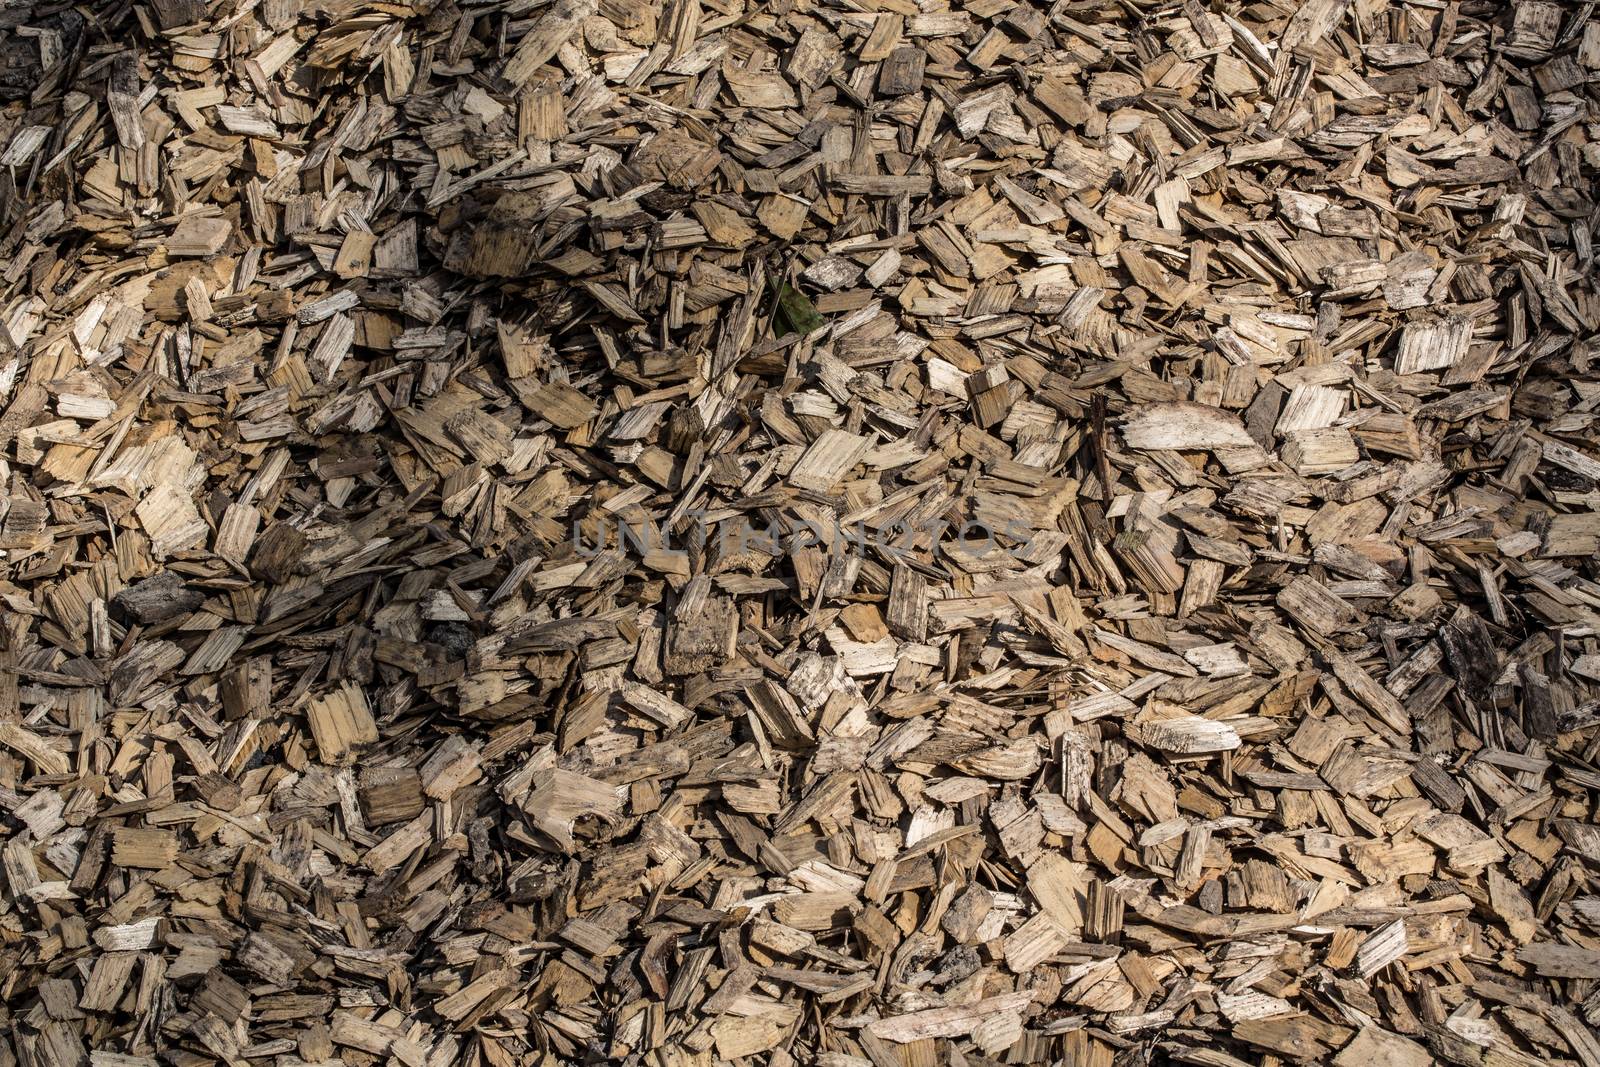 Bark mulch for soil improvement